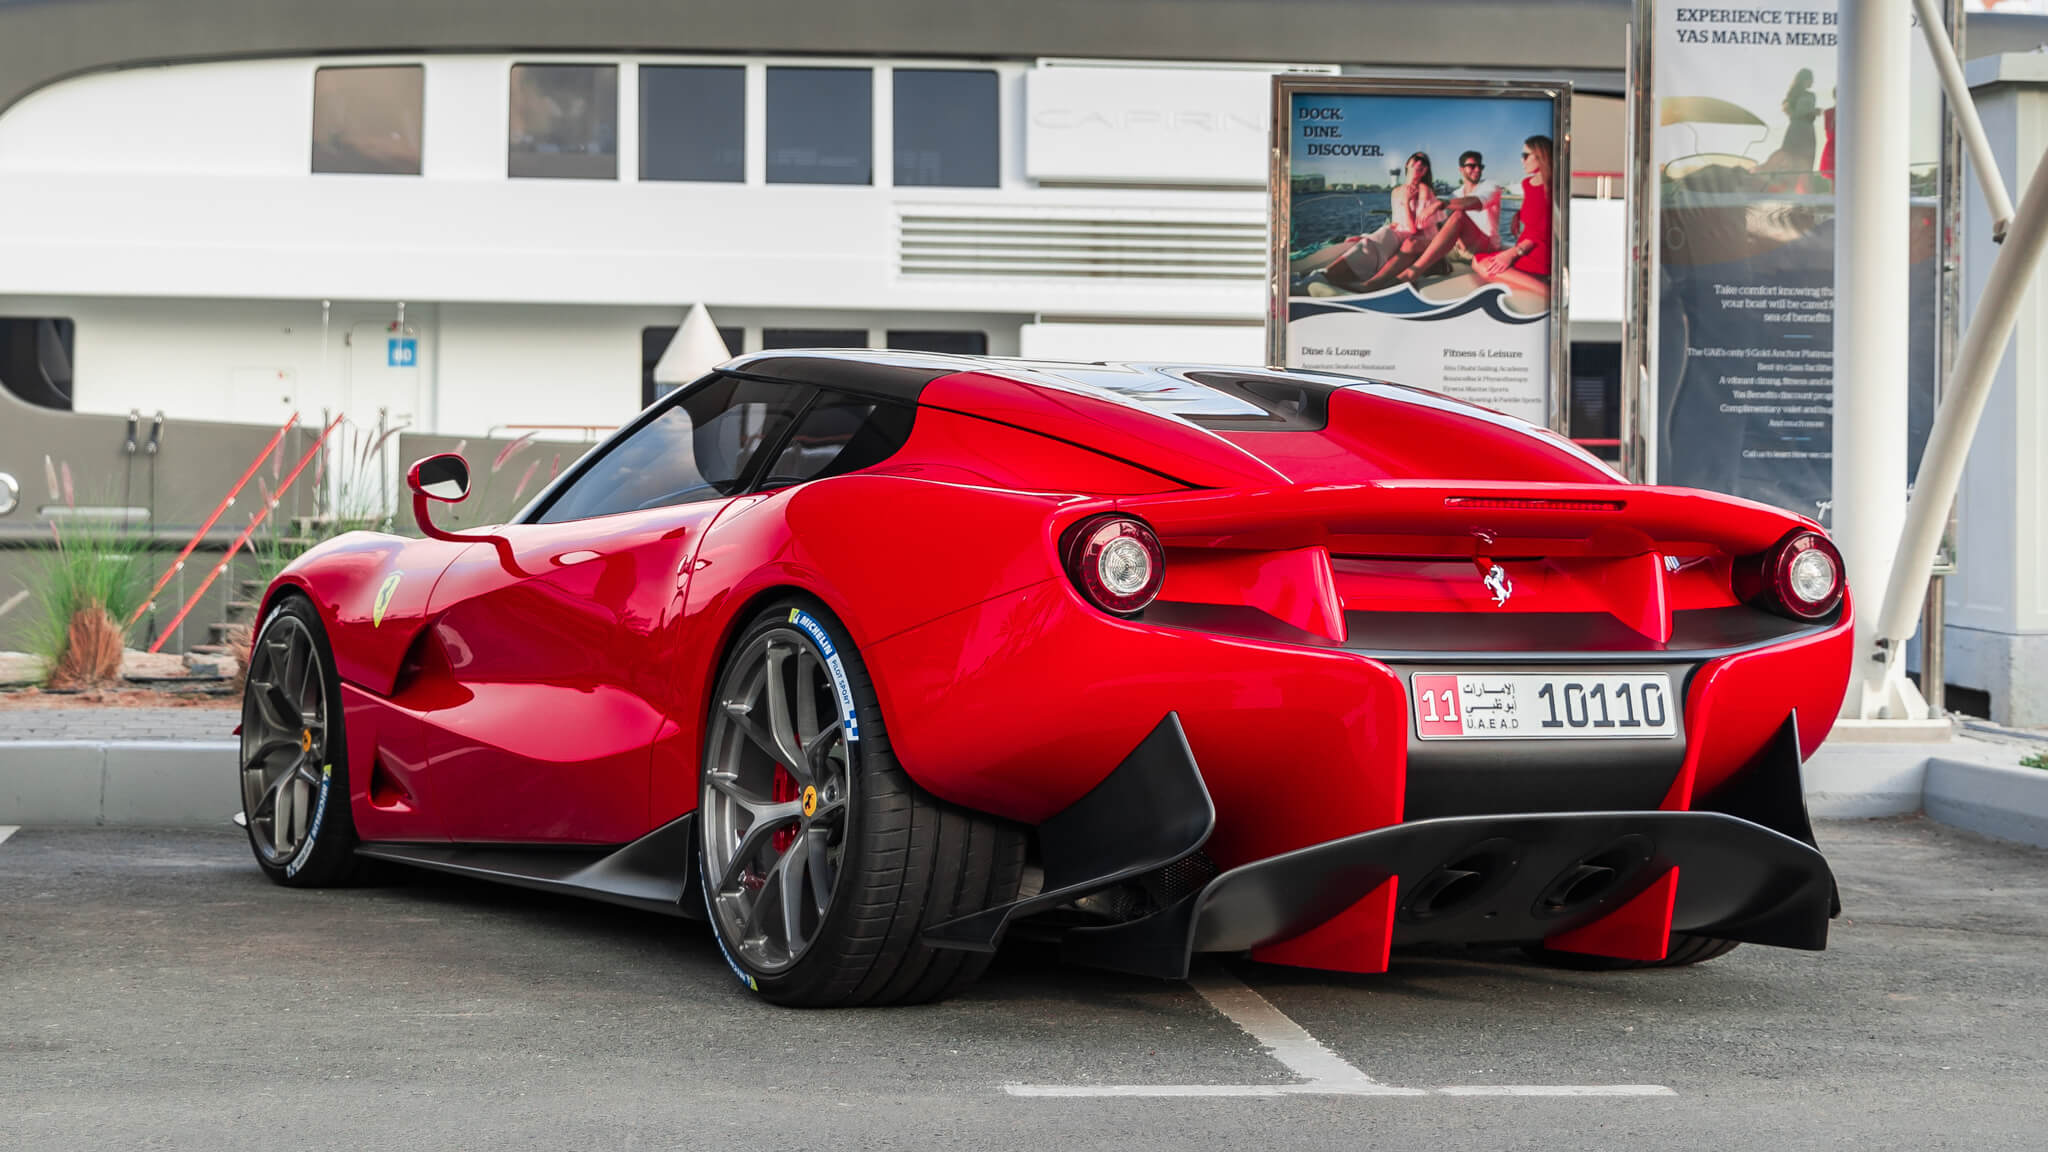 2014 Ferrari F12 TRS rear red